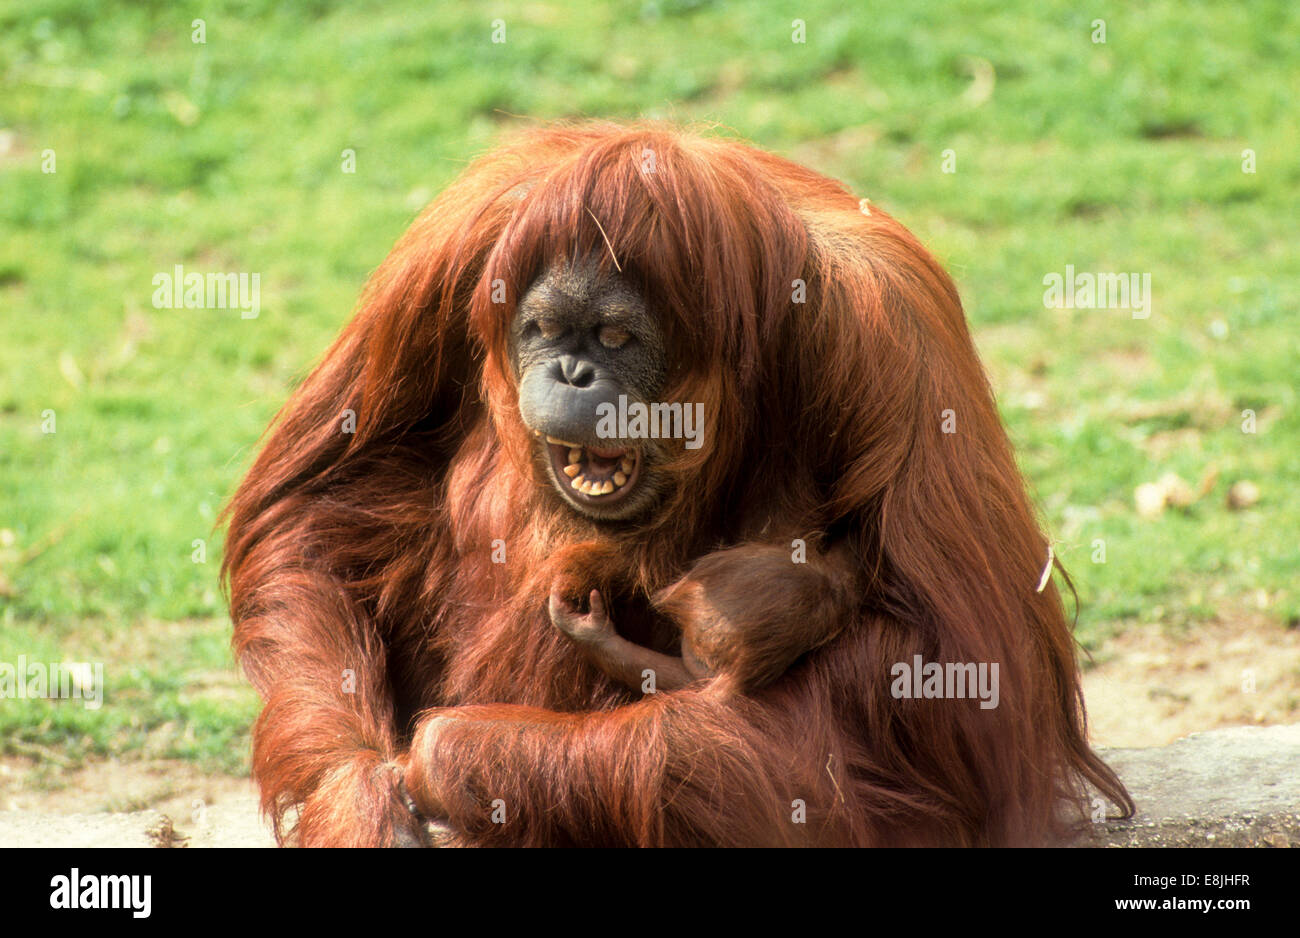 Sumatran orangutan (Pongo abelii or Pongo pygmaeus abelii) mother with infant In a zoo Stock Photo